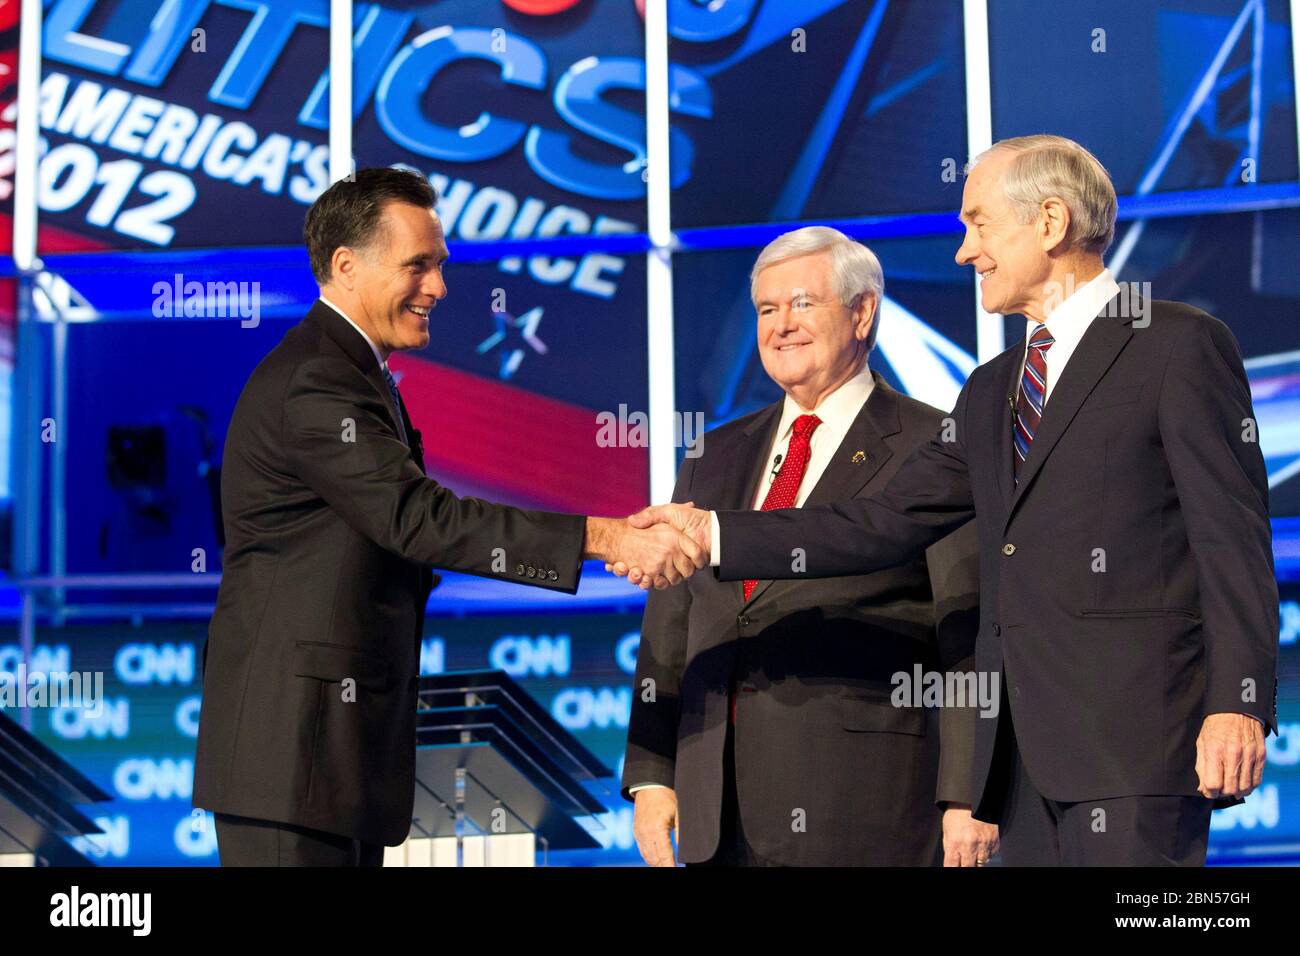 North Charleston, South Carolina, USA, Januar 19 2012: Mitt Romney, Left, schüttelt Ron Paul, Right, die Hand, während Newt Gingrich zusieht, wie die verbleibenden Kandidaten für die republikanische Präsidentschaftsnominierung in einer Debatte erscheinen, die im Fernsehen über CNN übertragen wird. ©Bob Daemmrich Stockfoto